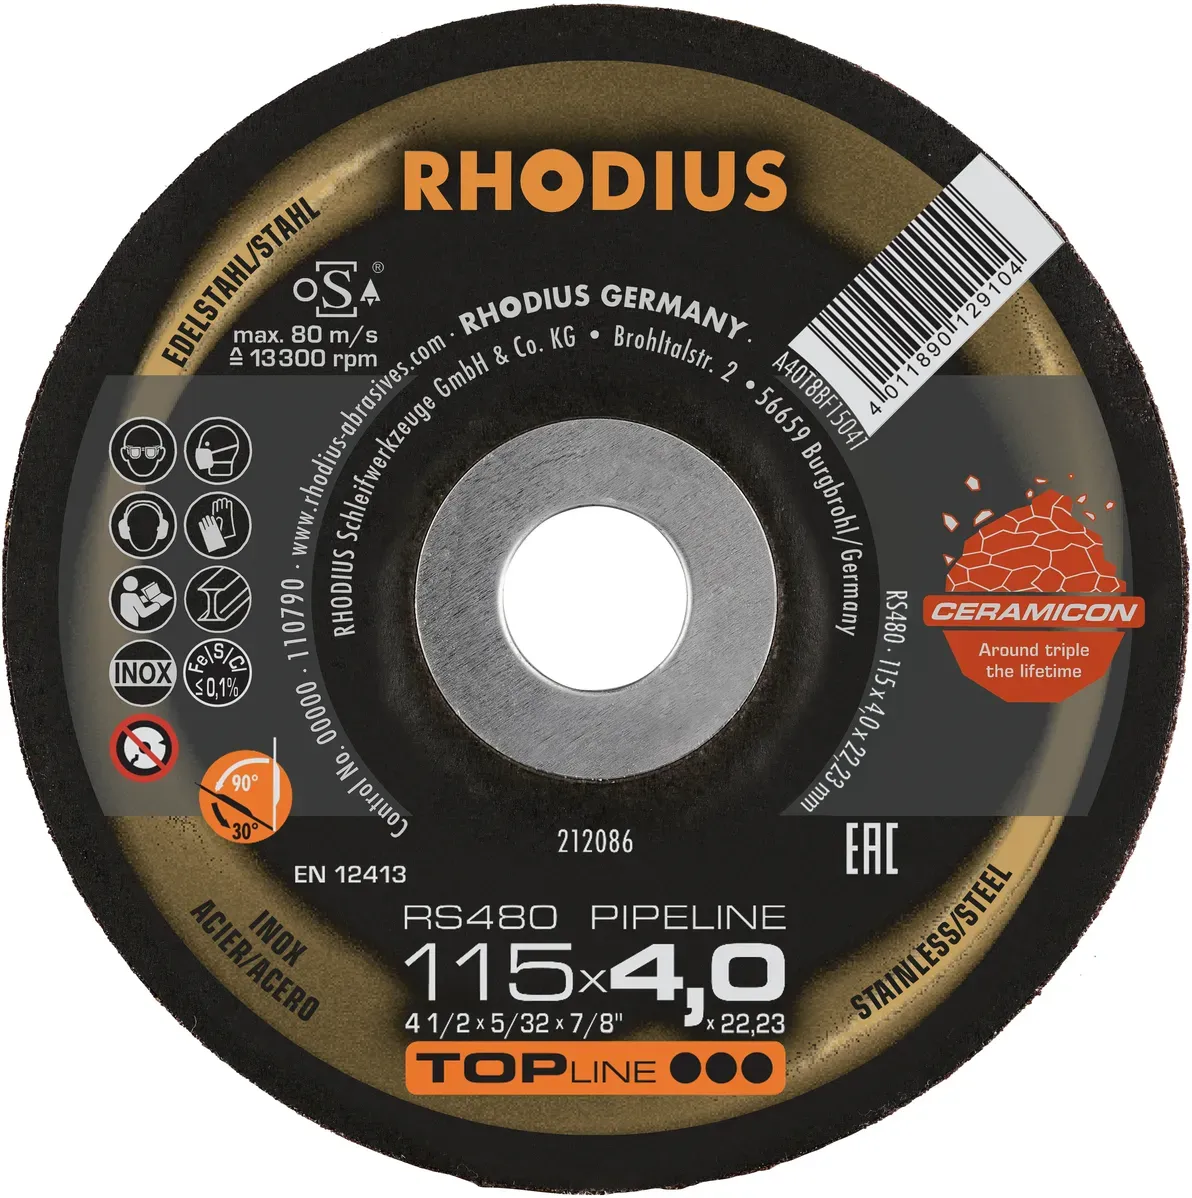 RHODIUS RS480 PIPELINE Schruppscheibe 115 Ã— 4,0 Ã— 22,23 - Profi Ausrüstung für Schleifarbeiten